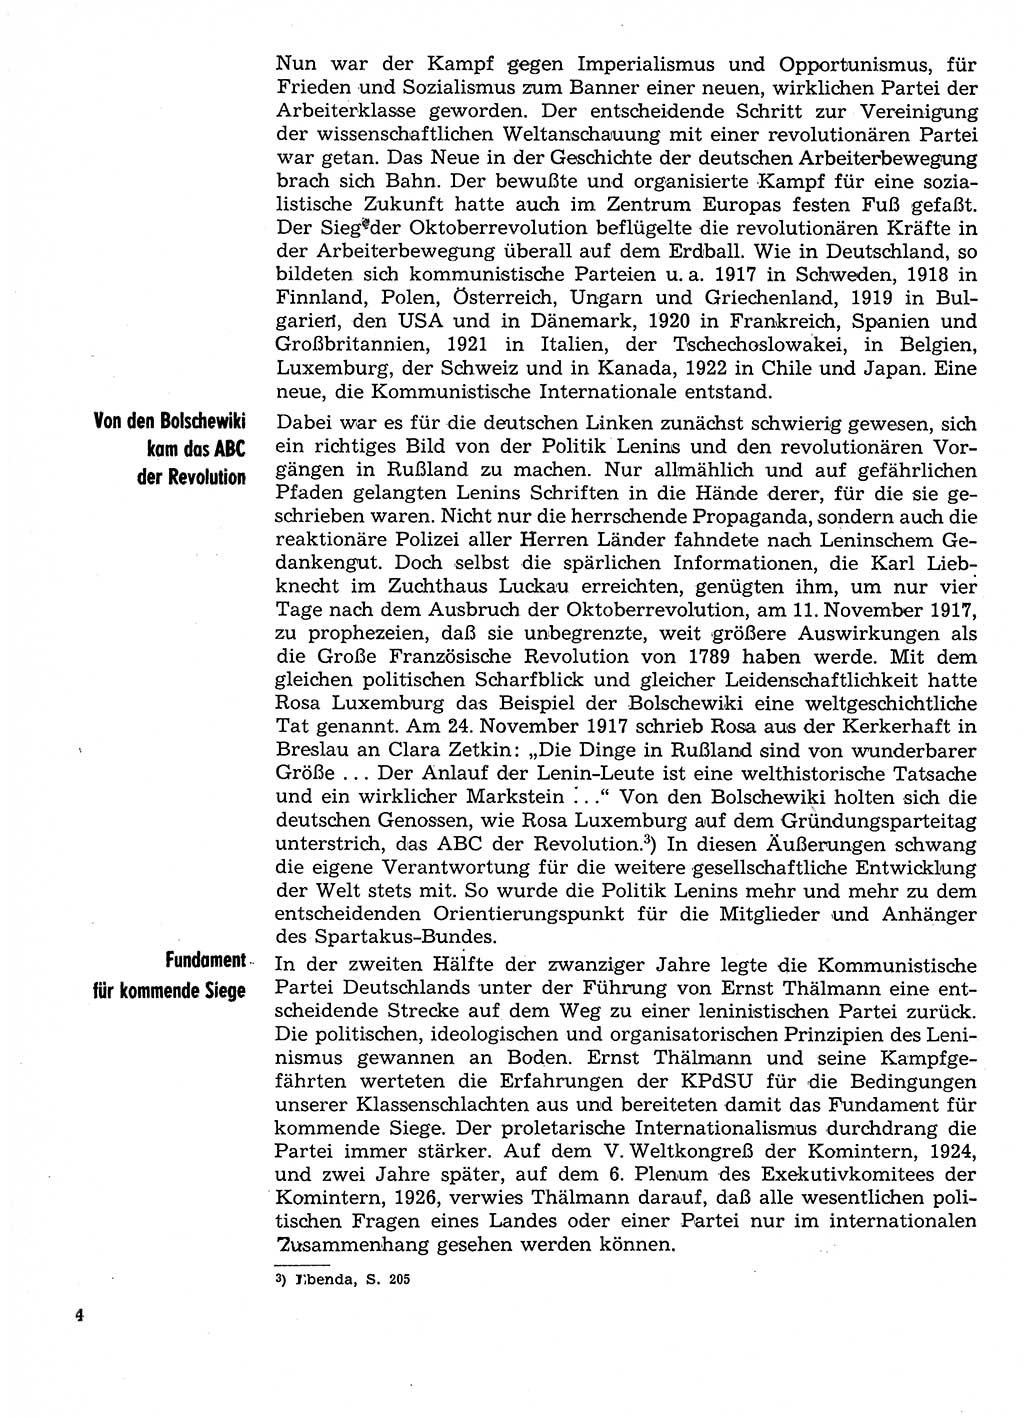 Neuer Weg (NW), Organ des Zentralkomitees (ZK) der SED (Sozialistische Einheitspartei Deutschlands) für Fragen des Parteilebens, 29. Jahrgang [Deutsche Demokratische Republik (DDR)] 1974, Seite 4 (NW ZK SED DDR 1974, S. 4)